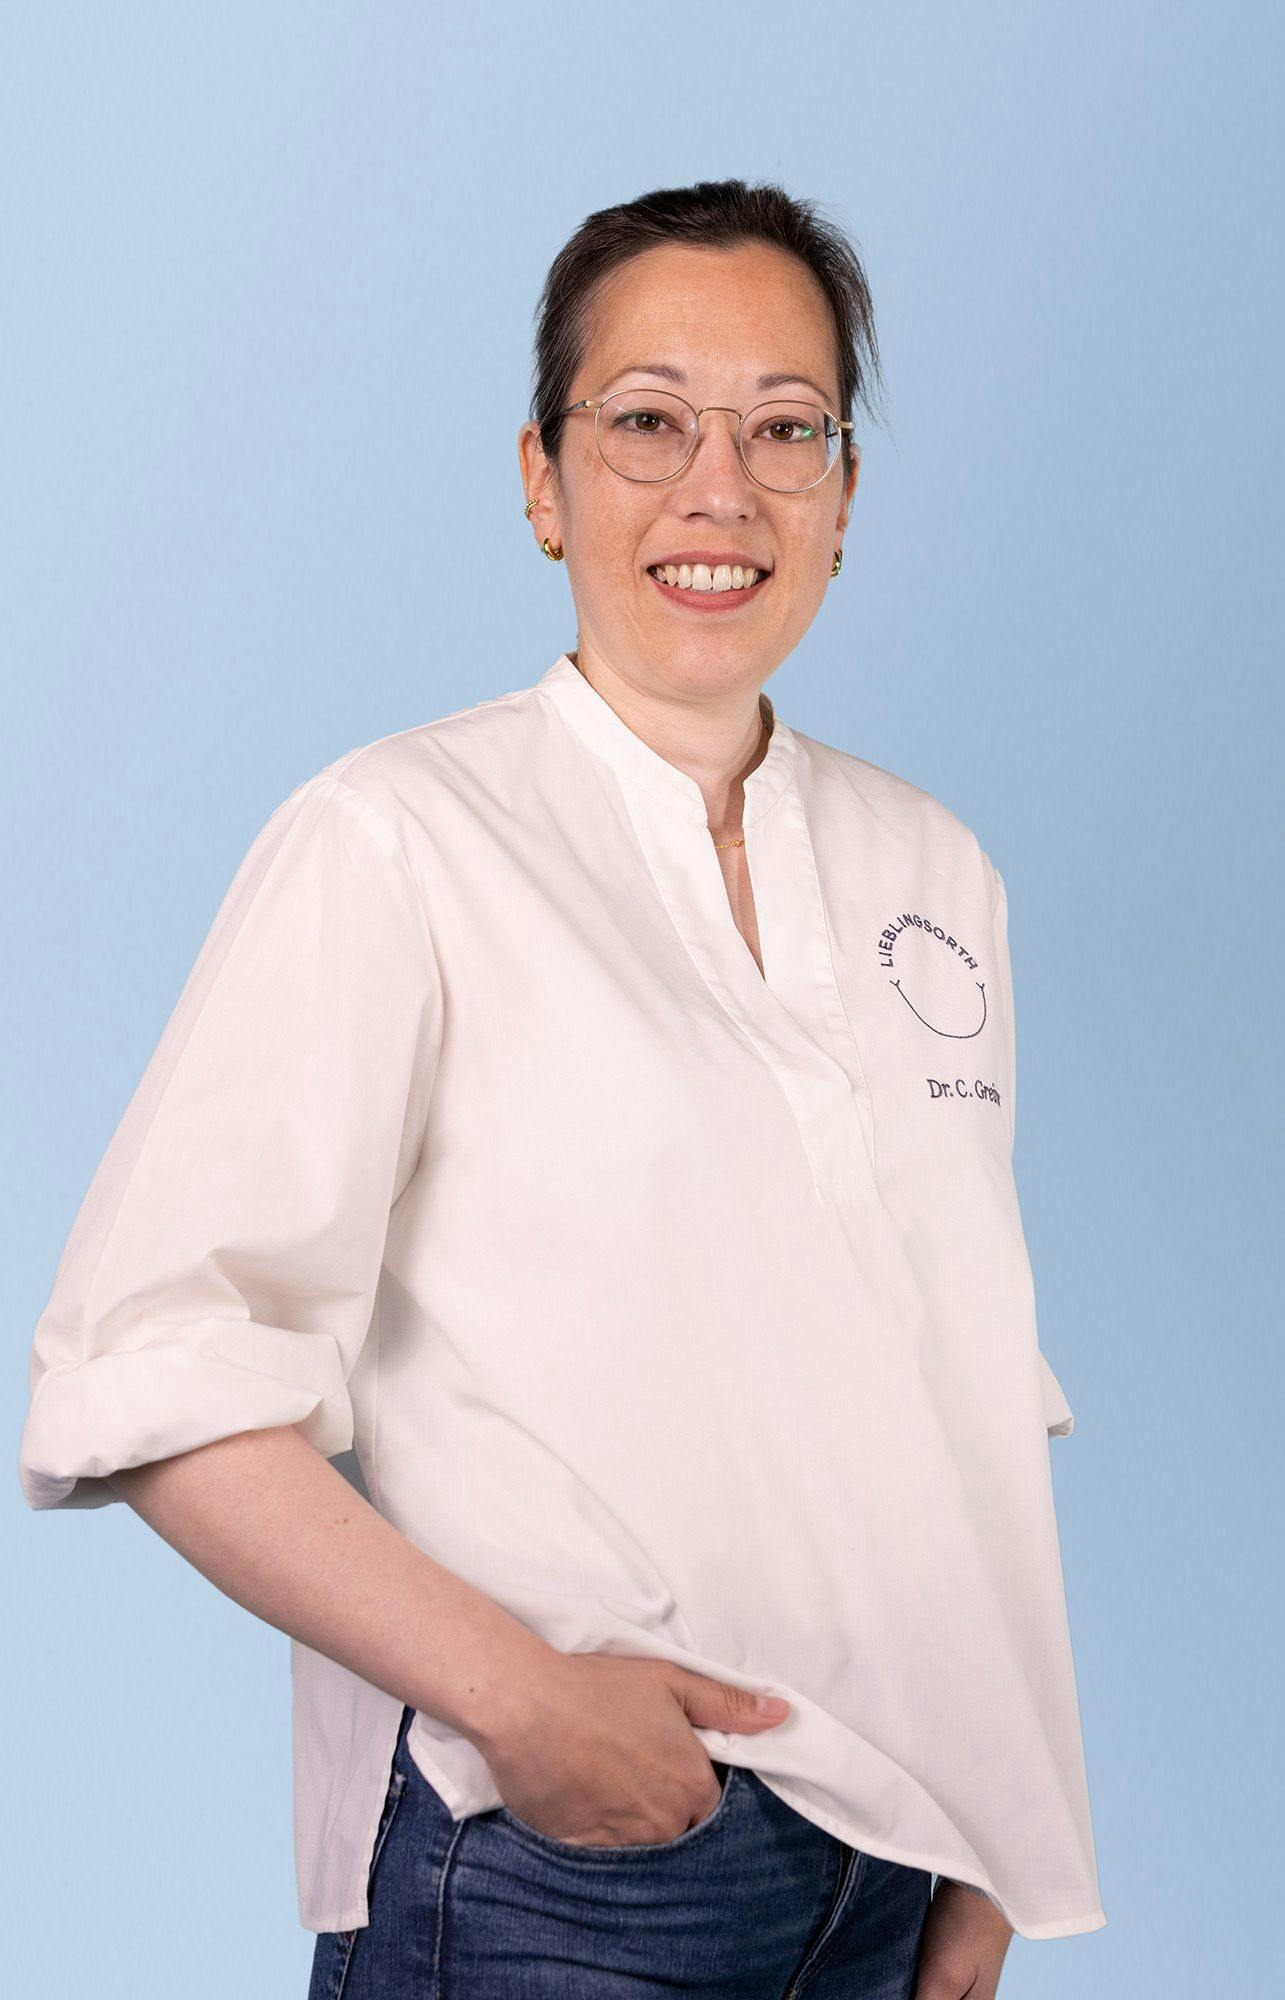 Dr. Cora Greiner